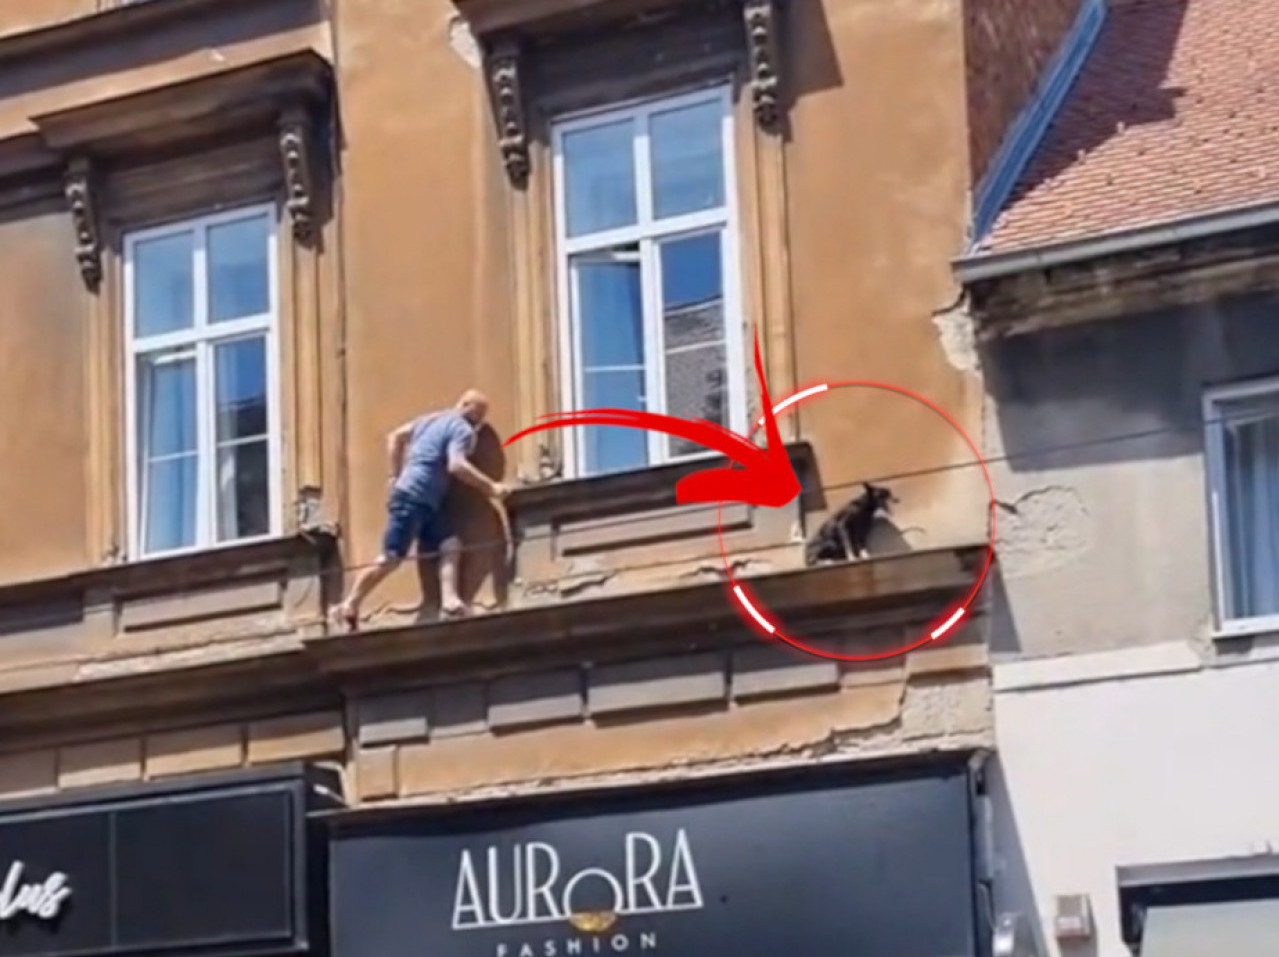 ХЕРОЈСКИ ПОДВИГ: Момак спасио пса док се фасада ломила ВИДЕО